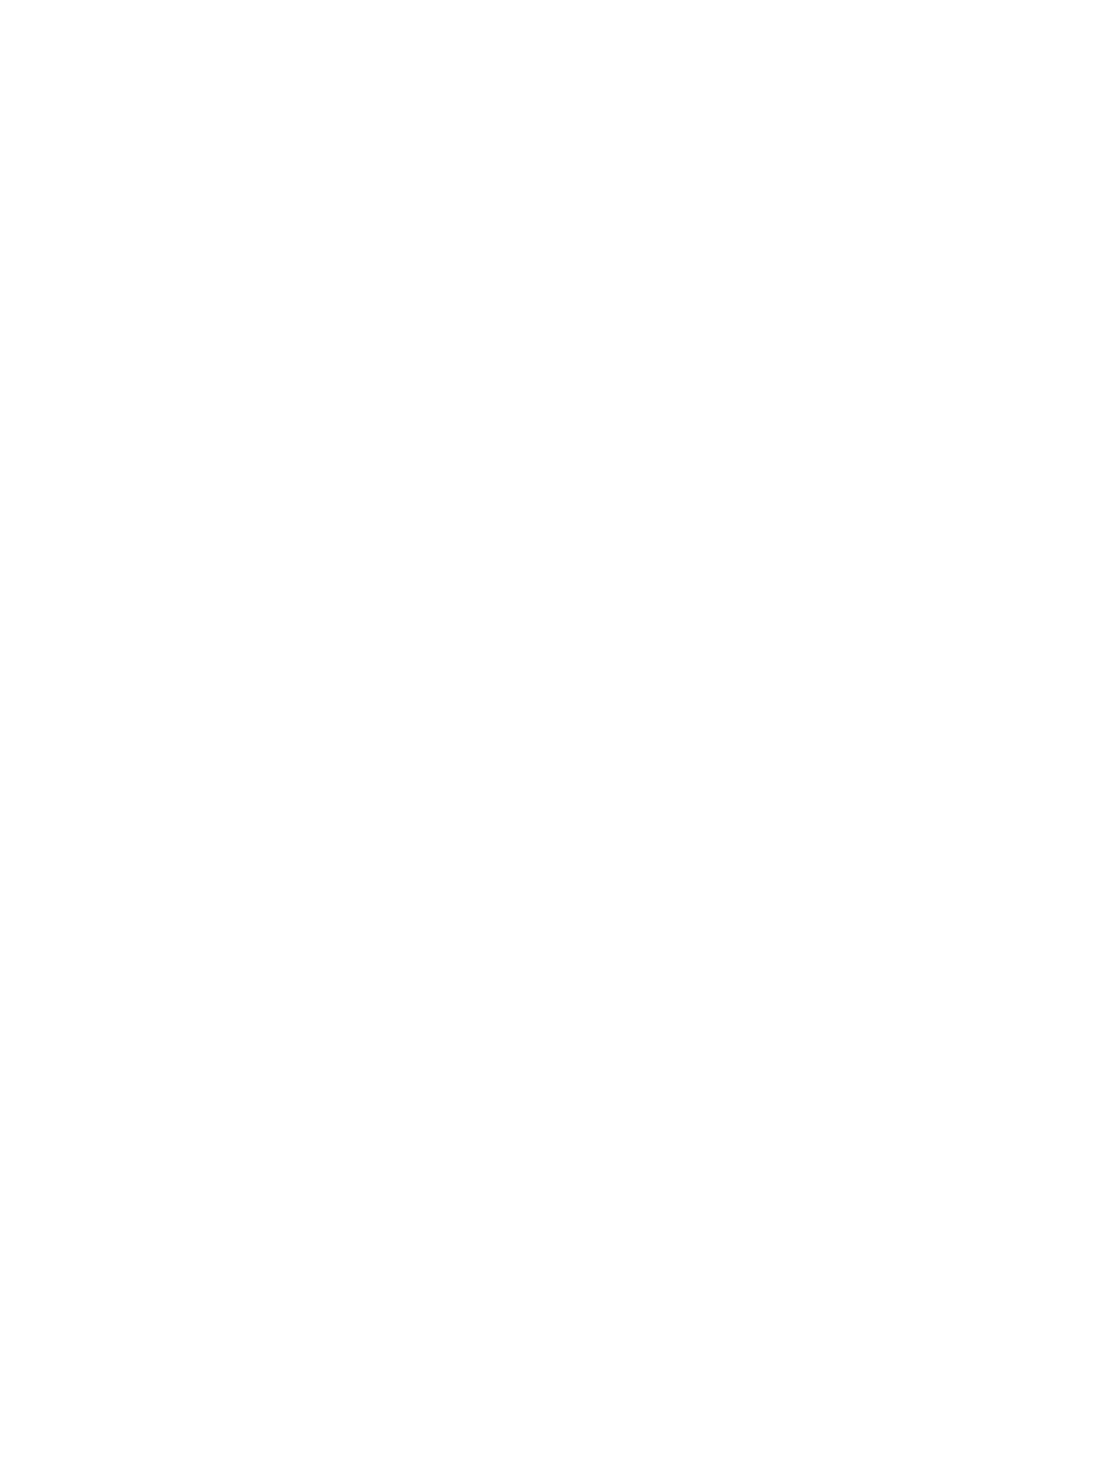 Breville Group logo for dark backgrounds (transparent PNG)